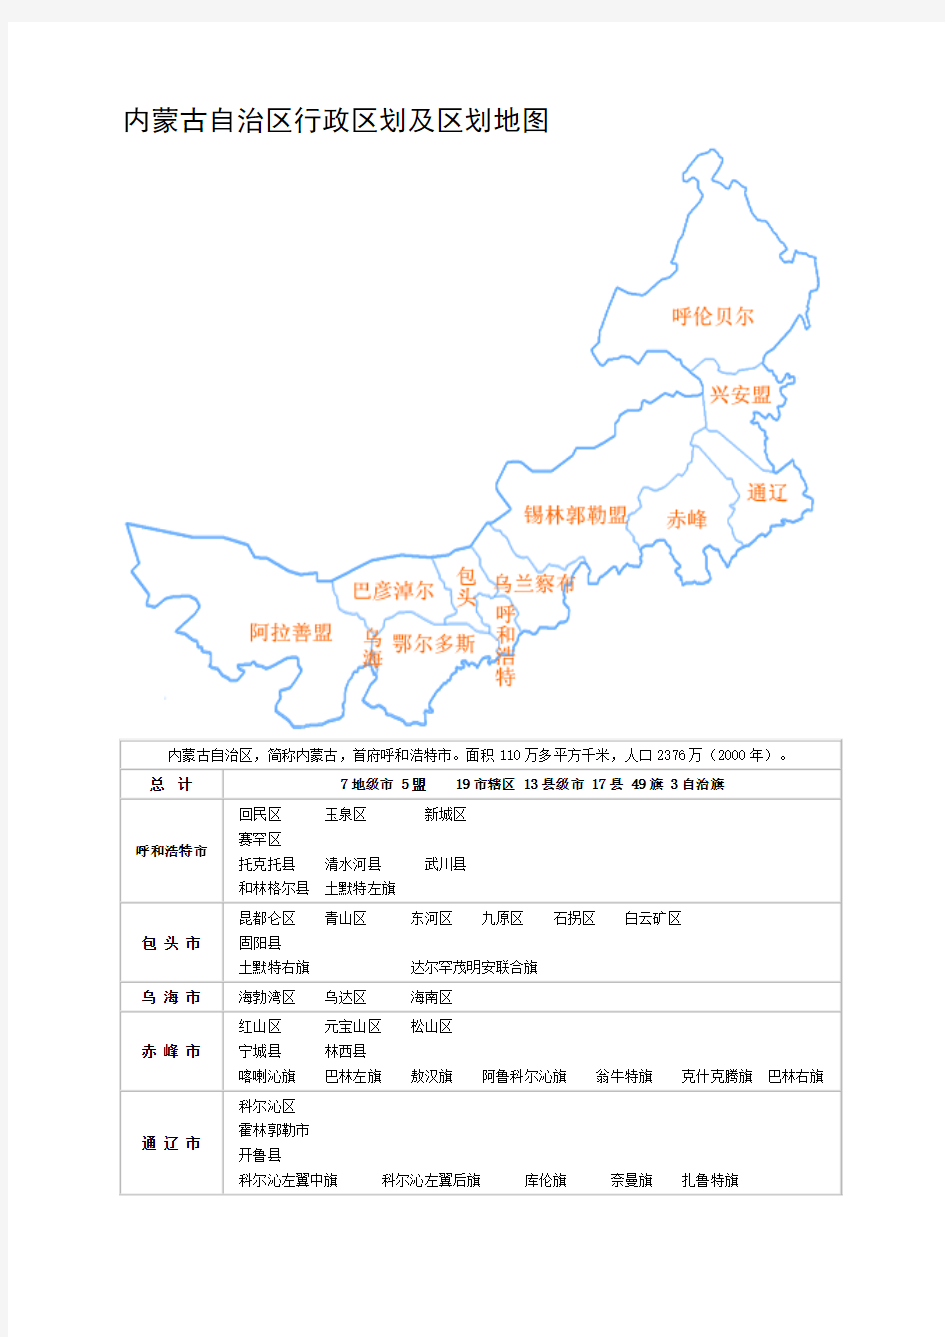 内蒙古自治区行政区划及区划地图